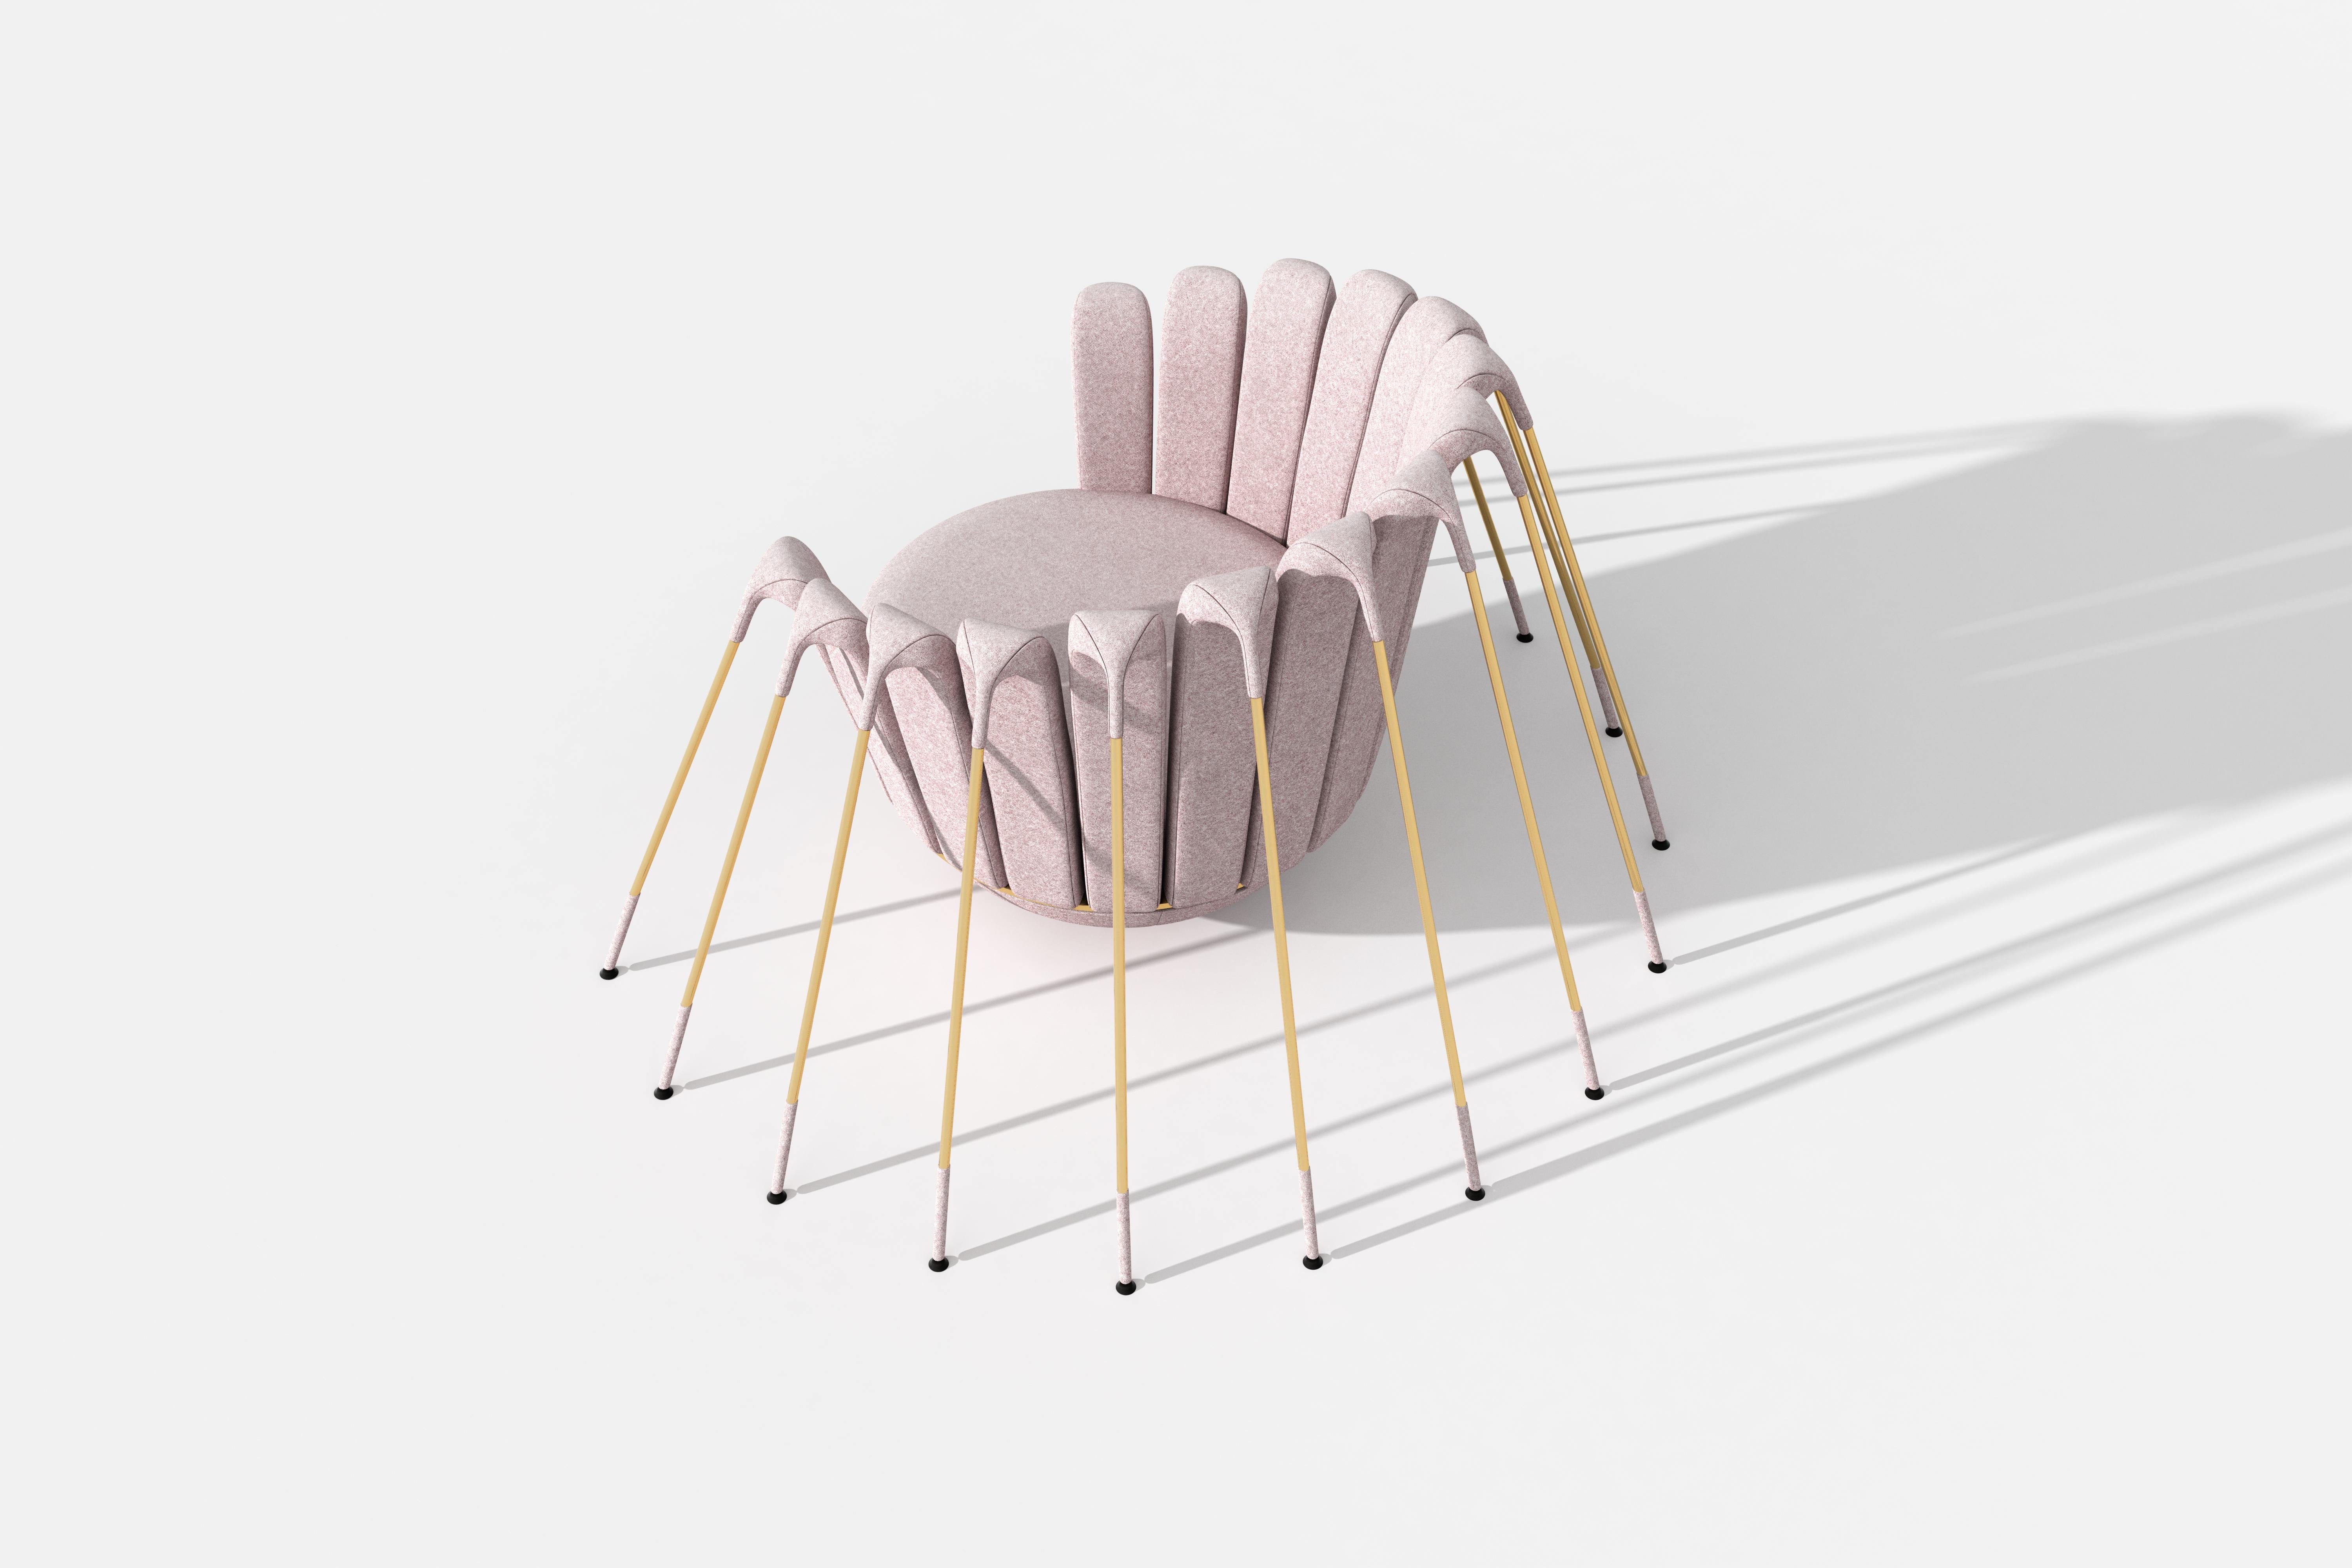 Le fauteuil Les Araigneés est tapissé de velours rose poudré et posé sur une base hémisphérique, suspendue par une multitude de pieds en métal doré.

Dans l'imagination débordante du designer italo-parisien Marc Ange, 